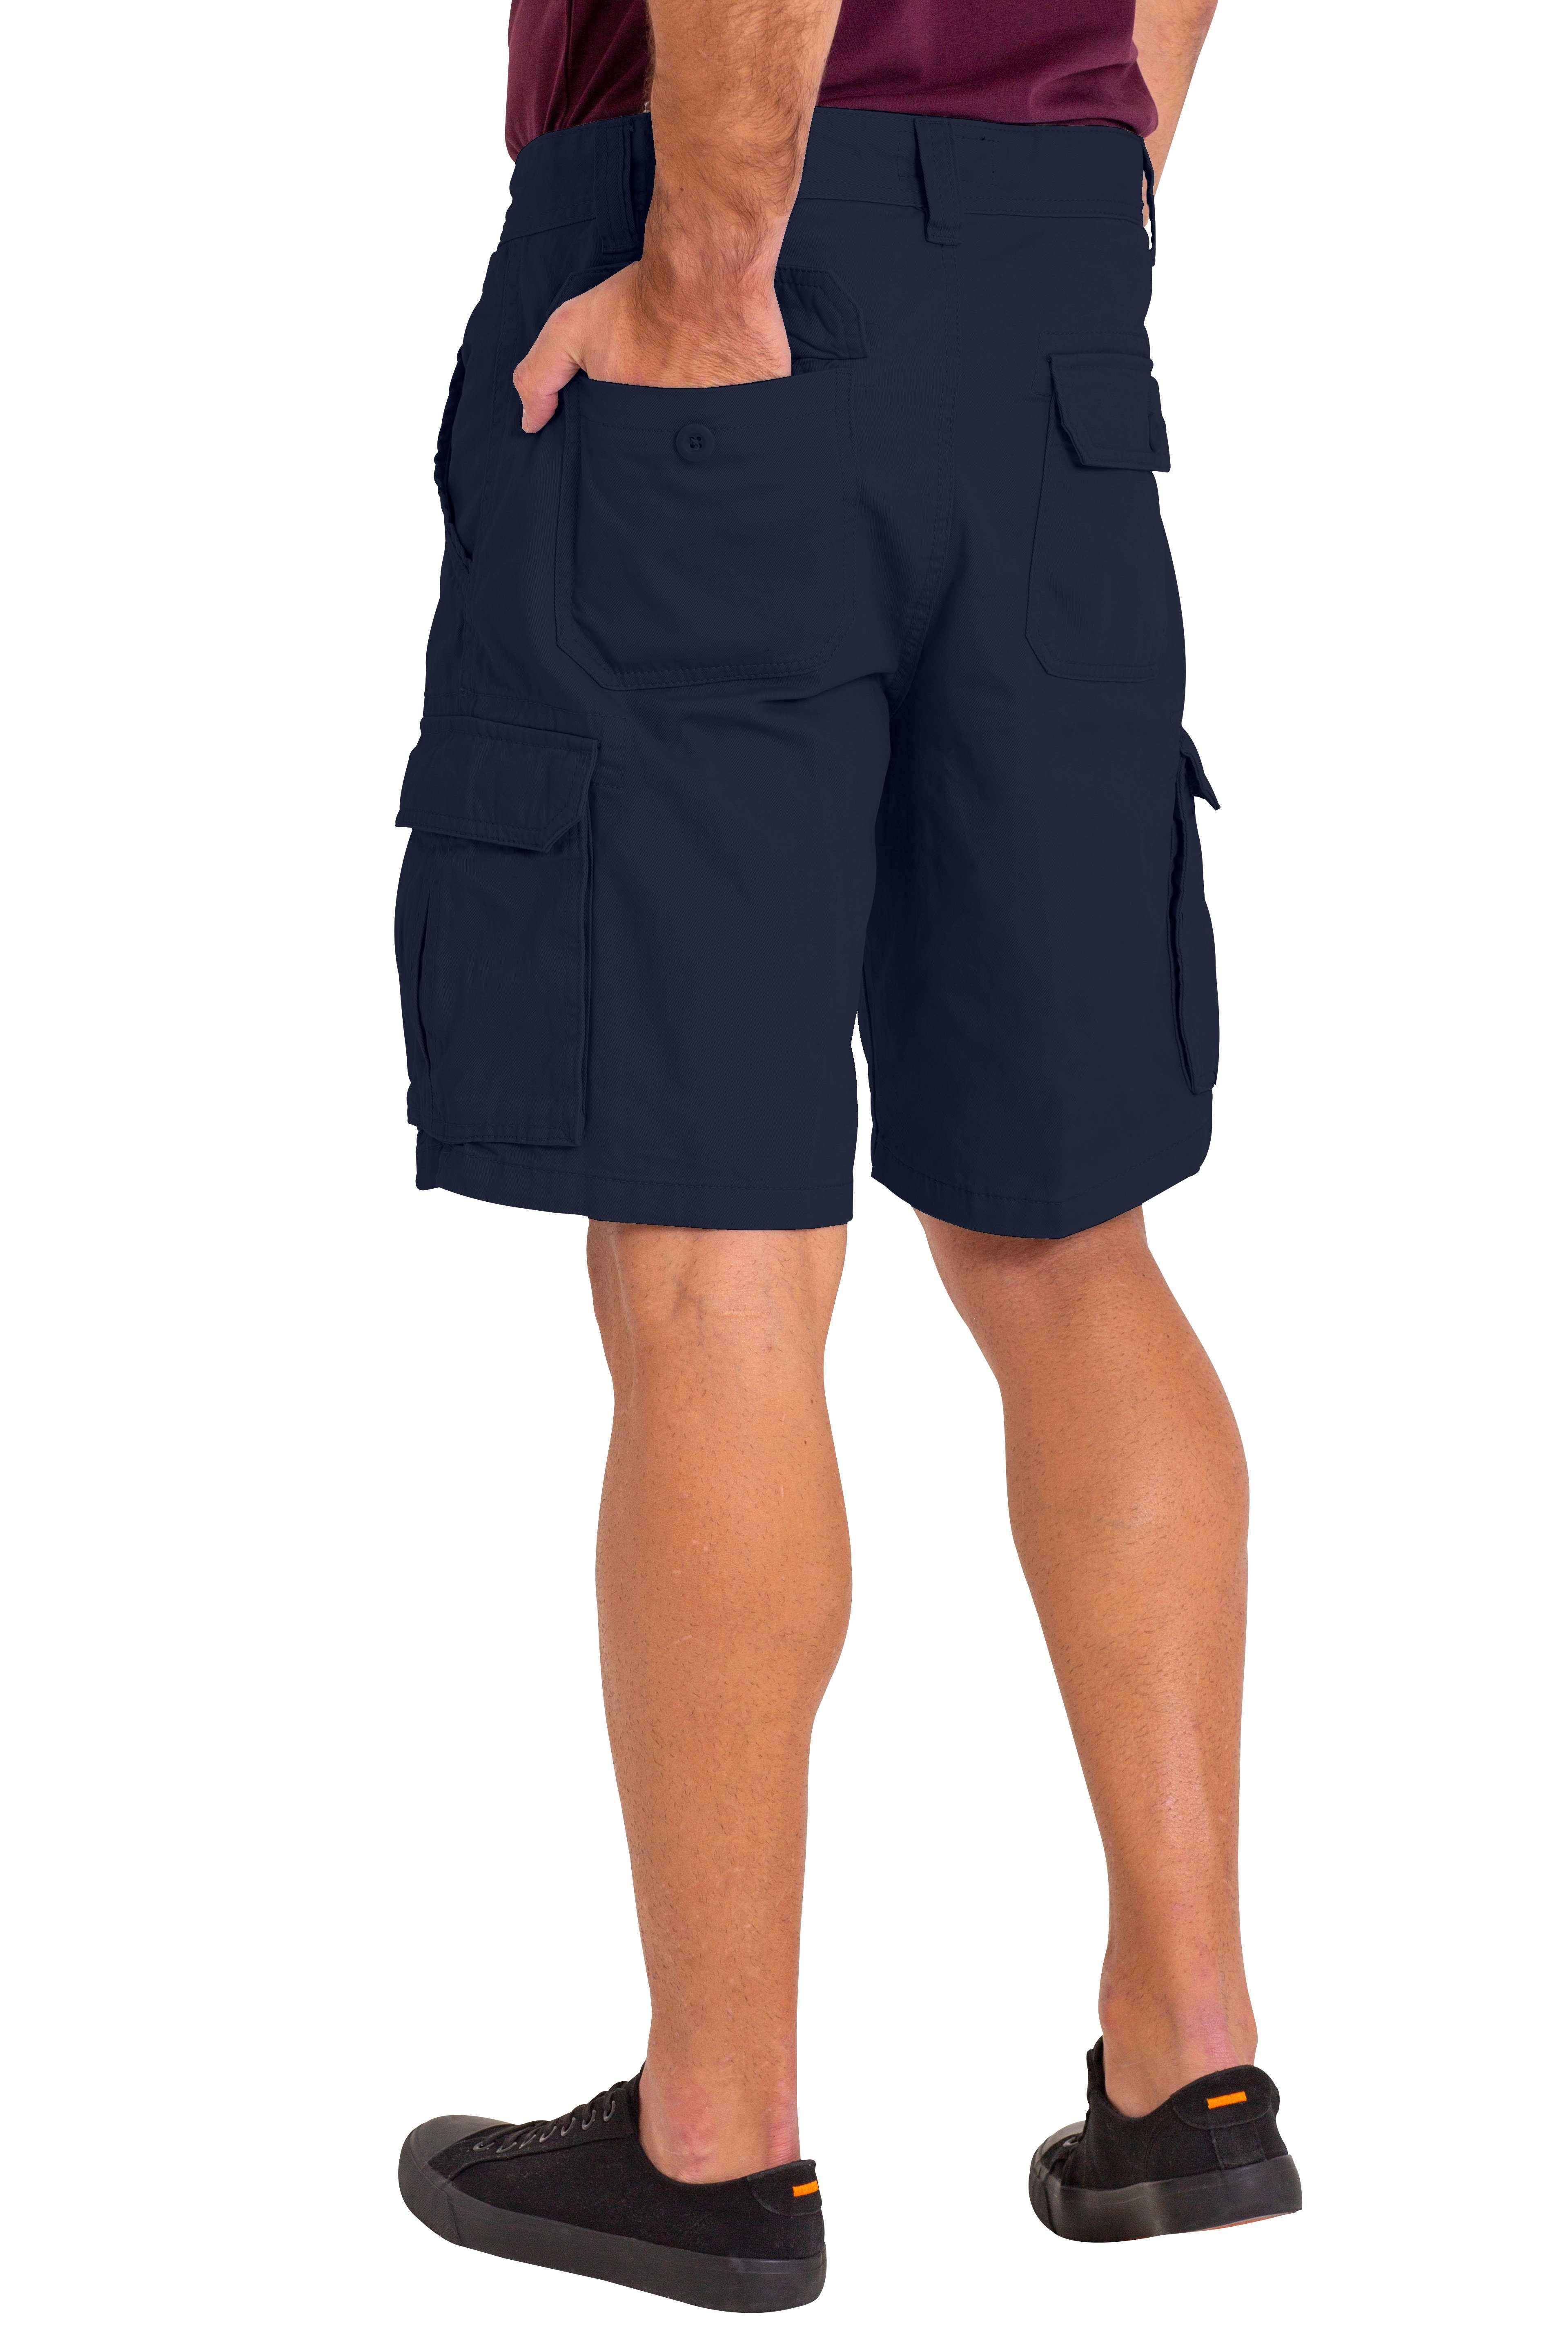 Cargo Herren Cargoshorts 6 Taschen 100% Premium Sommer BlauerHafen Navy Baumwolle Halbhose Shorts